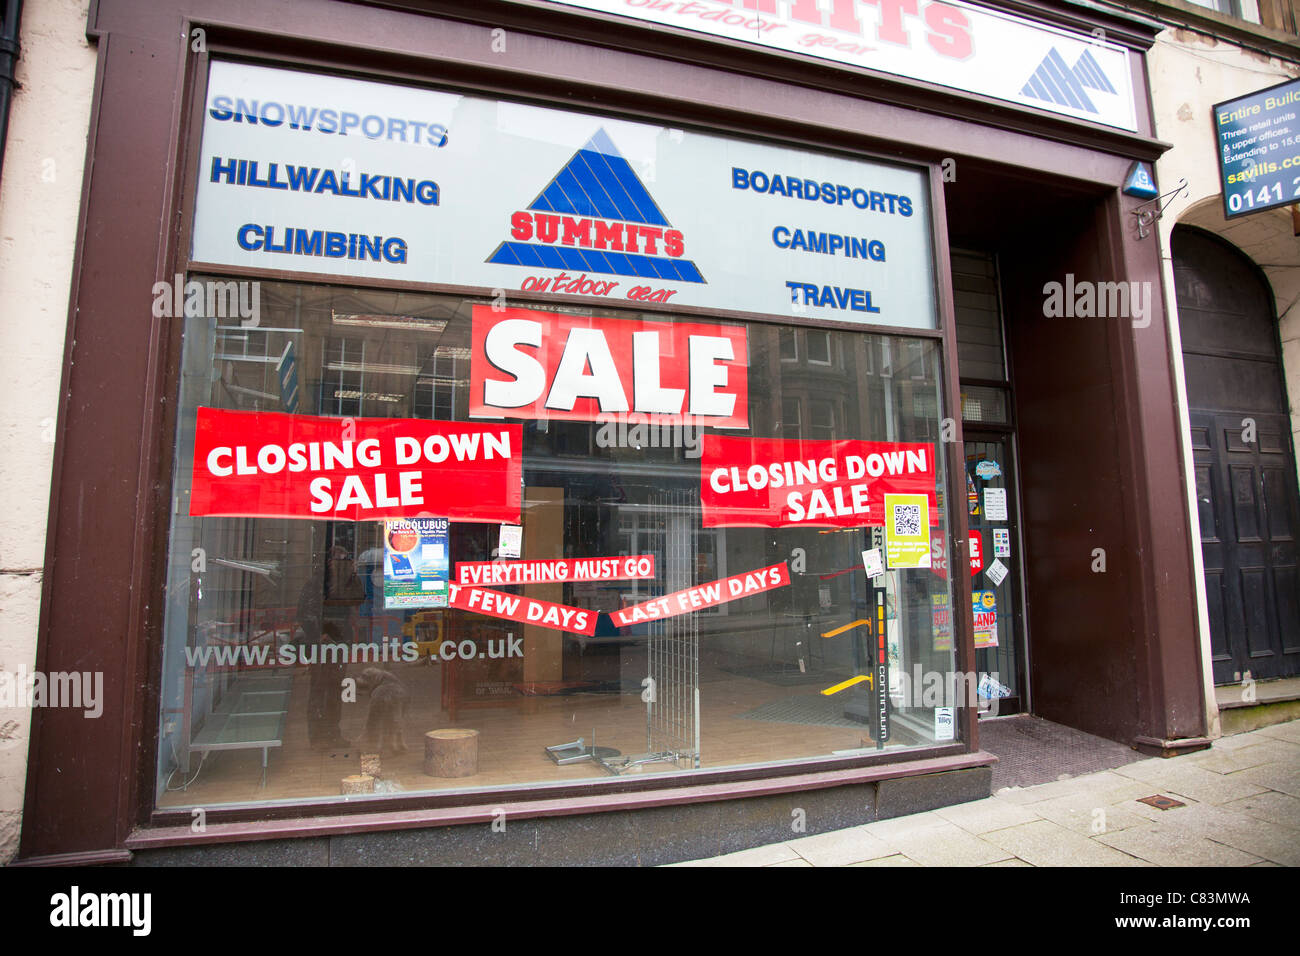 Édimbourg, vide typique boutique avec vente et la fermeture de la fenêtre en signe de resserrement du crédit frappant le high street Banque D'Images